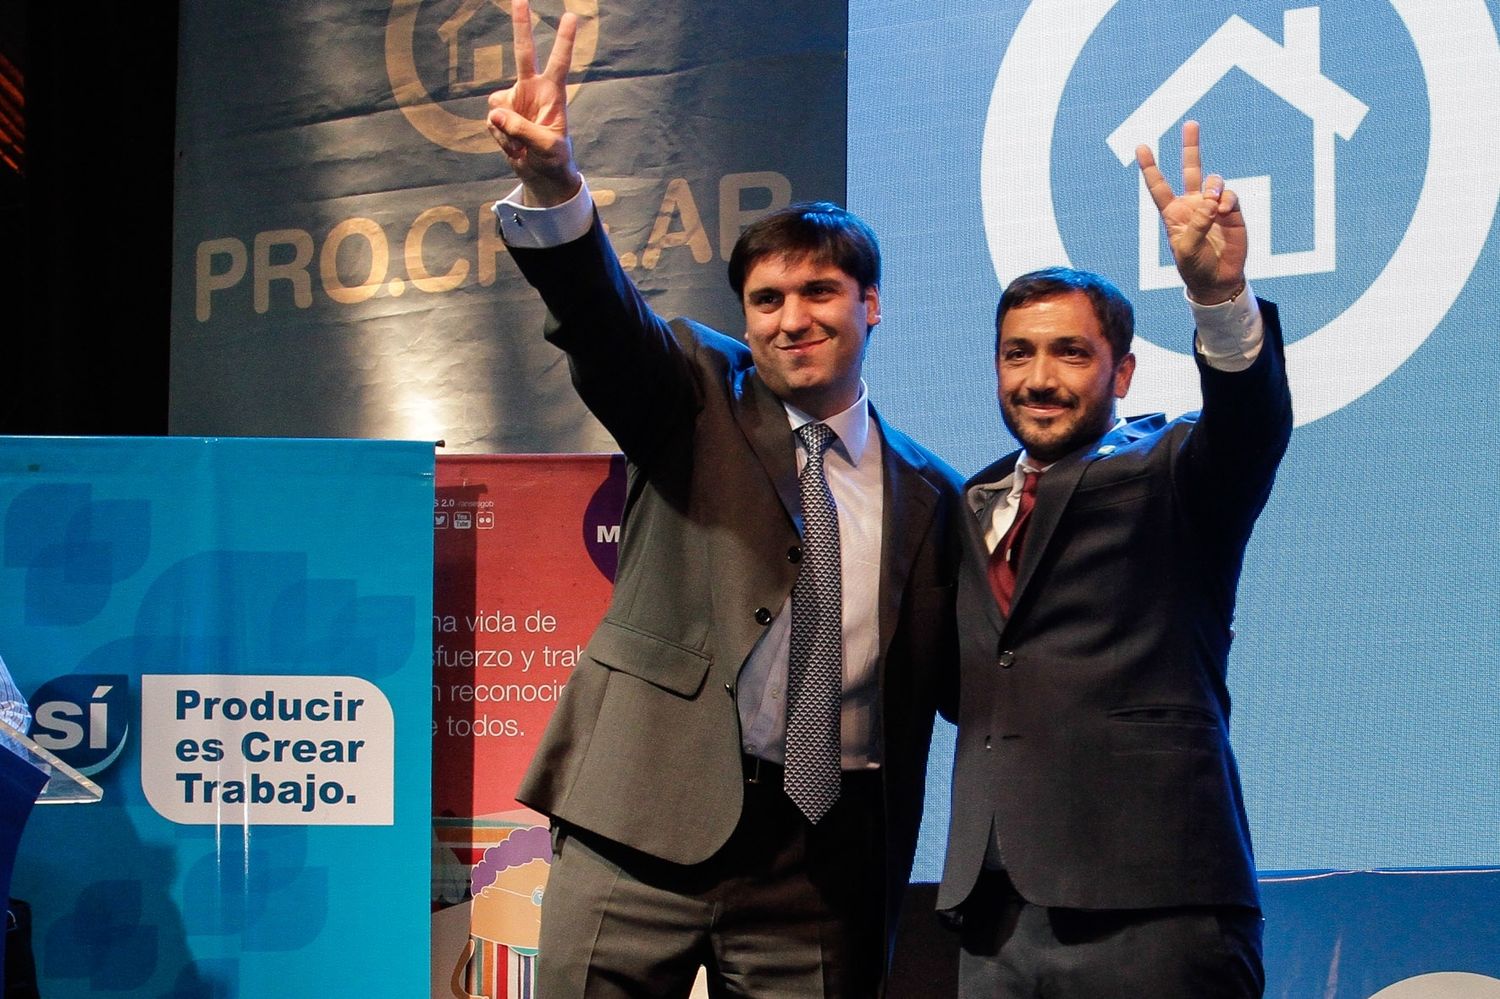 Elecciones 2015: Bossio y Mussi se mostraron juntos en sorteo de ProCreAr